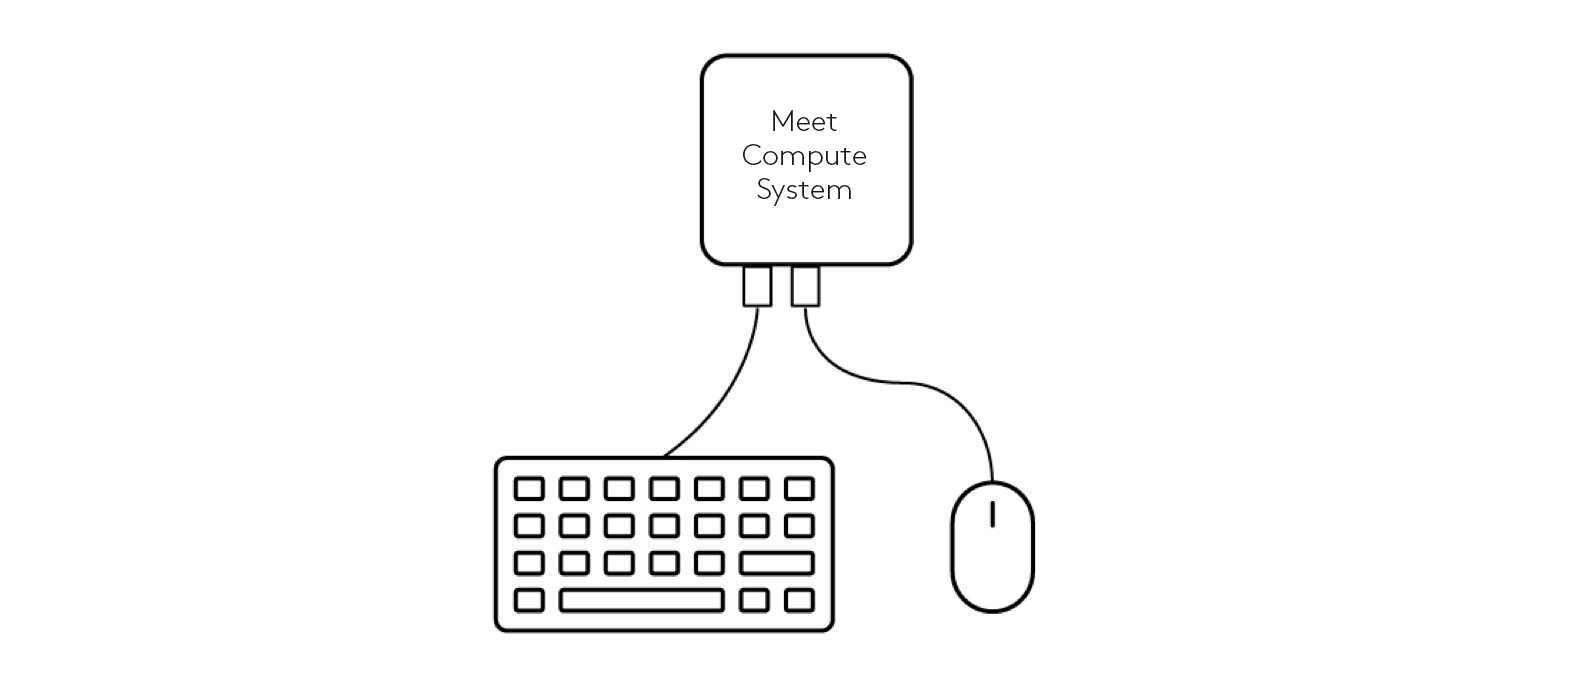 Schemat podłączenia klawiatury i myszy do systemu Meet Compute